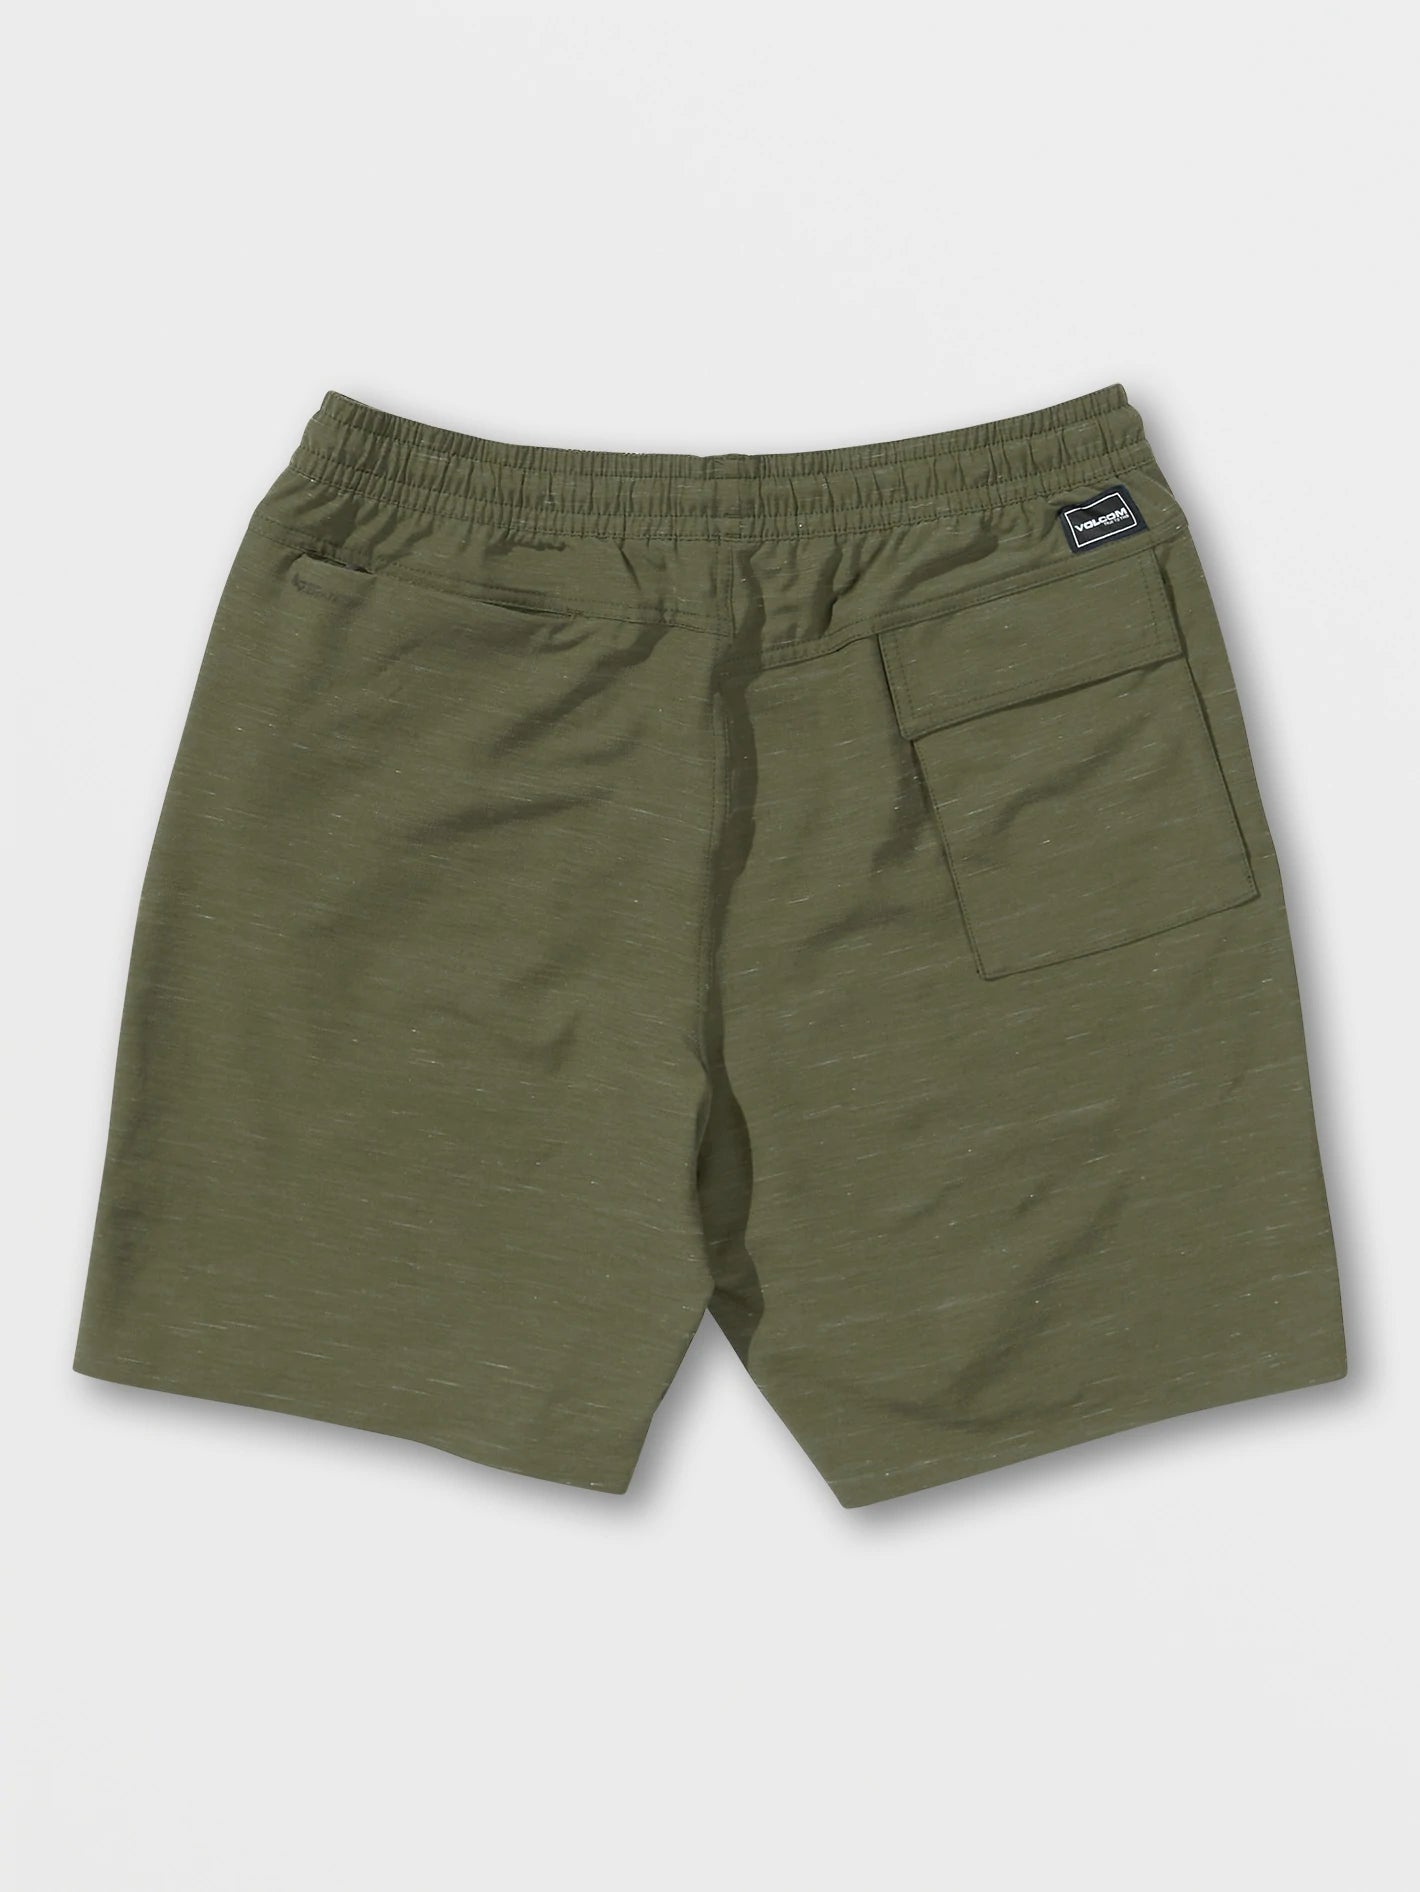 Volcom Wrecpack Hybrid 19" Mens Shorts - Military Mens Shorts